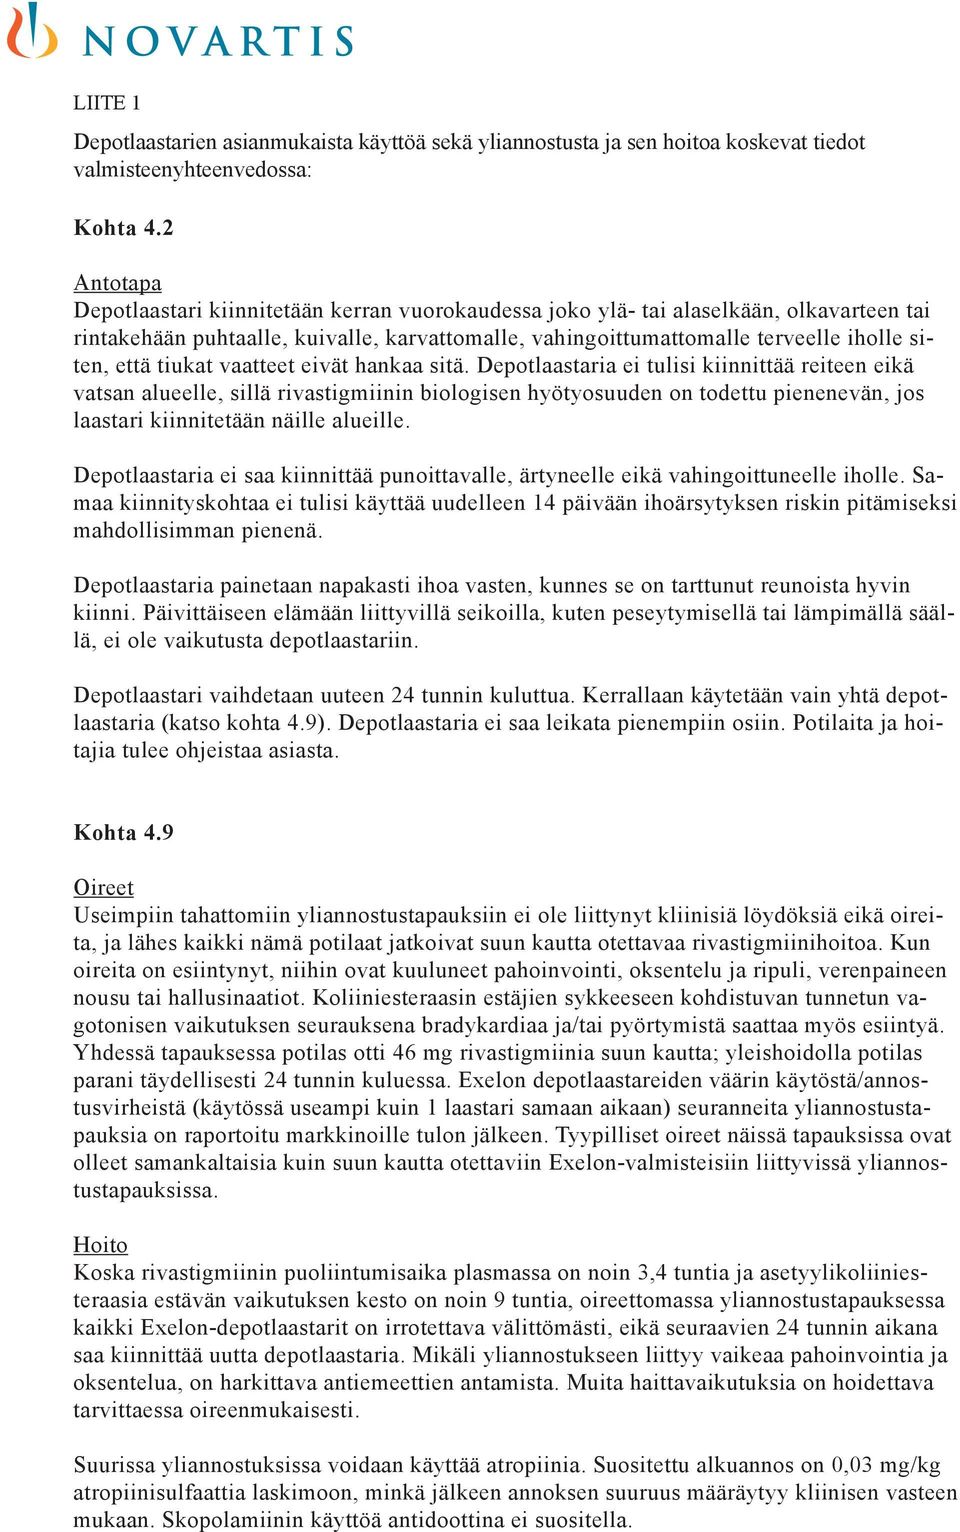 Turvallisuustiedote terveydenhuollon ammattilaisille Exelon -  depotlaastarien epäasianmukaisesta käytöstä ja lääkitysvirheistä. - PDF  Ilmainen lataus